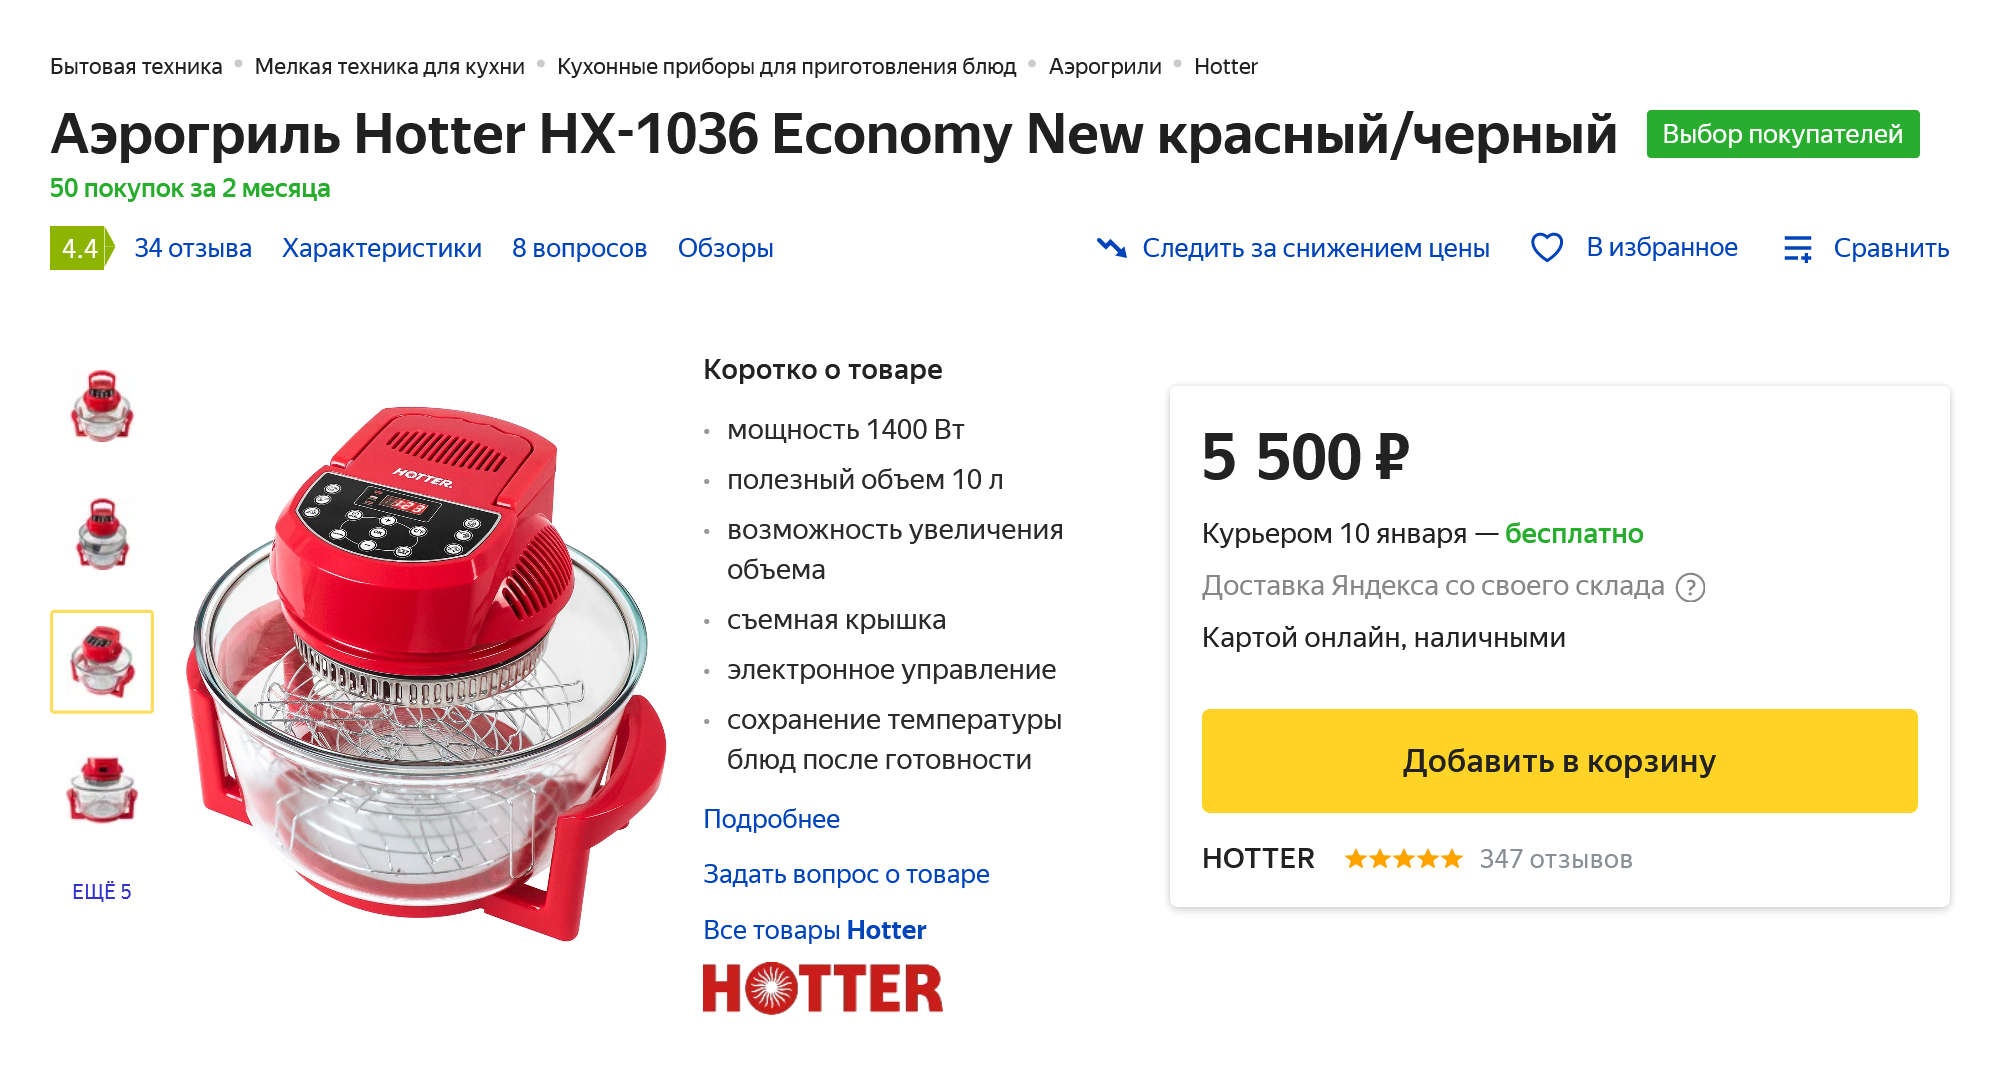 Сейчас такой же аэрогриль, как у меня, стоит дешевле, чем в 2004 году. Источник: market.yandex.ru